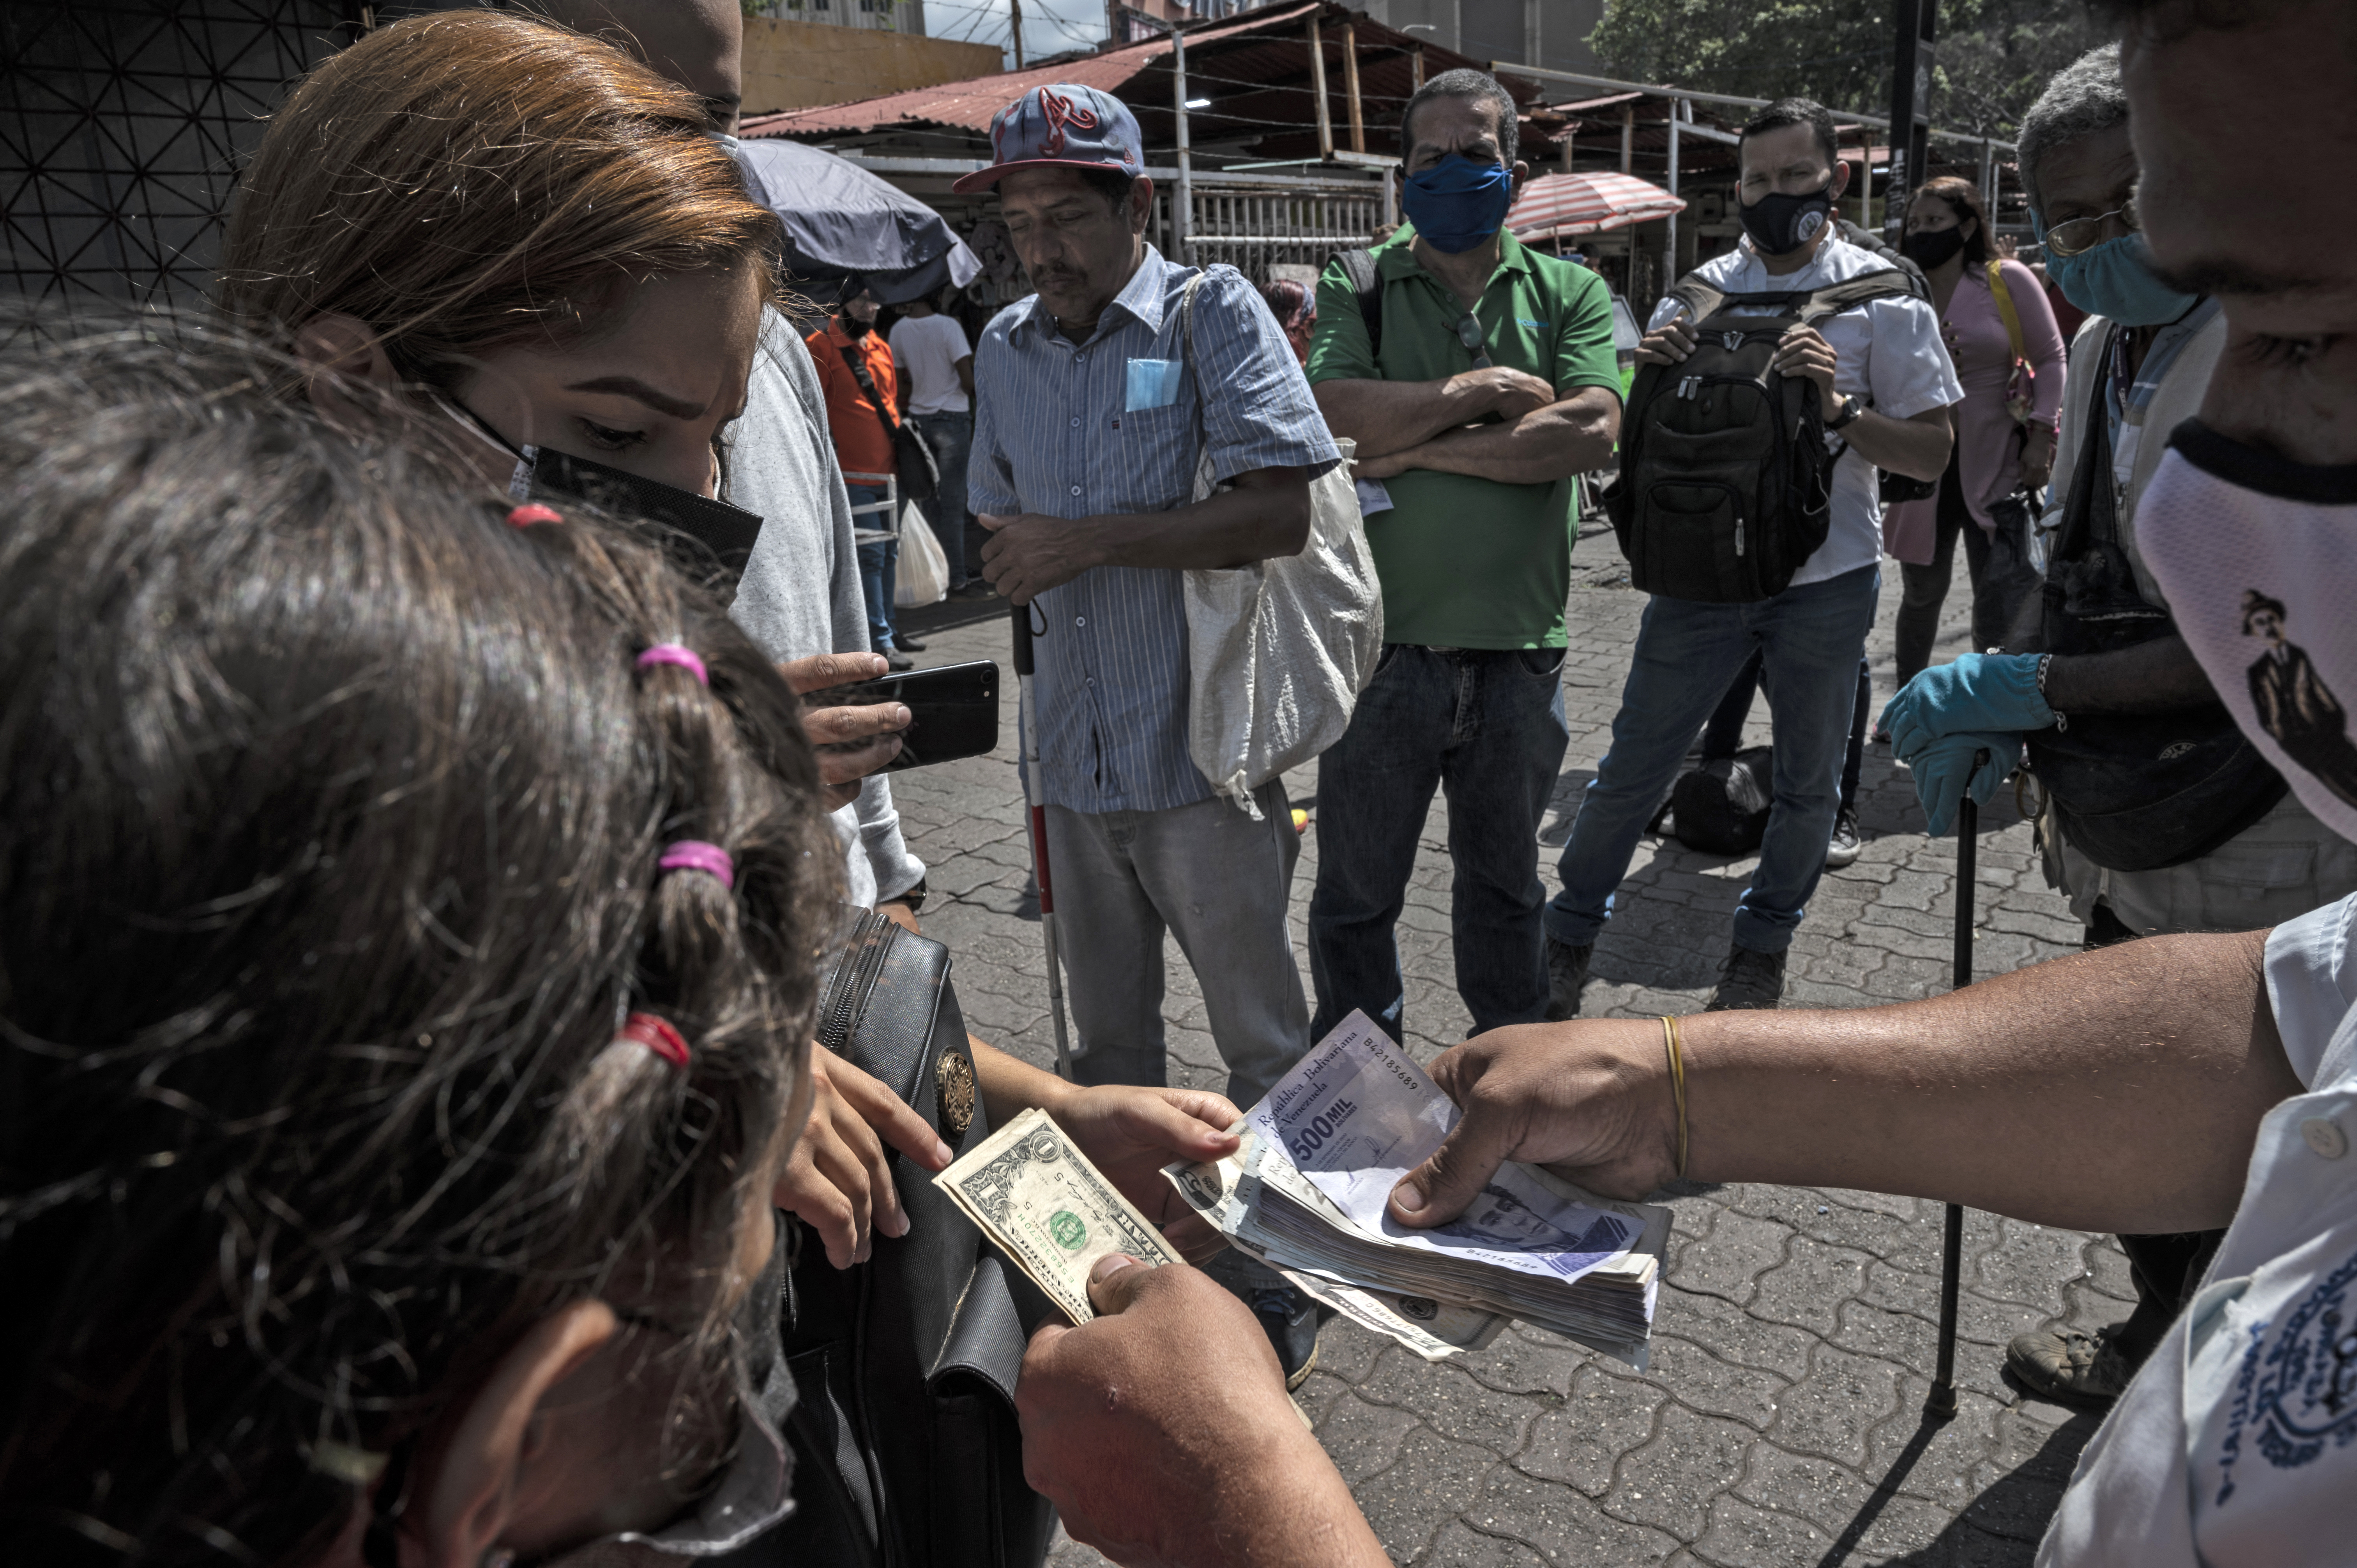 Pesimismo en alza: los venezolanos indican que su situación económica ha empeorado